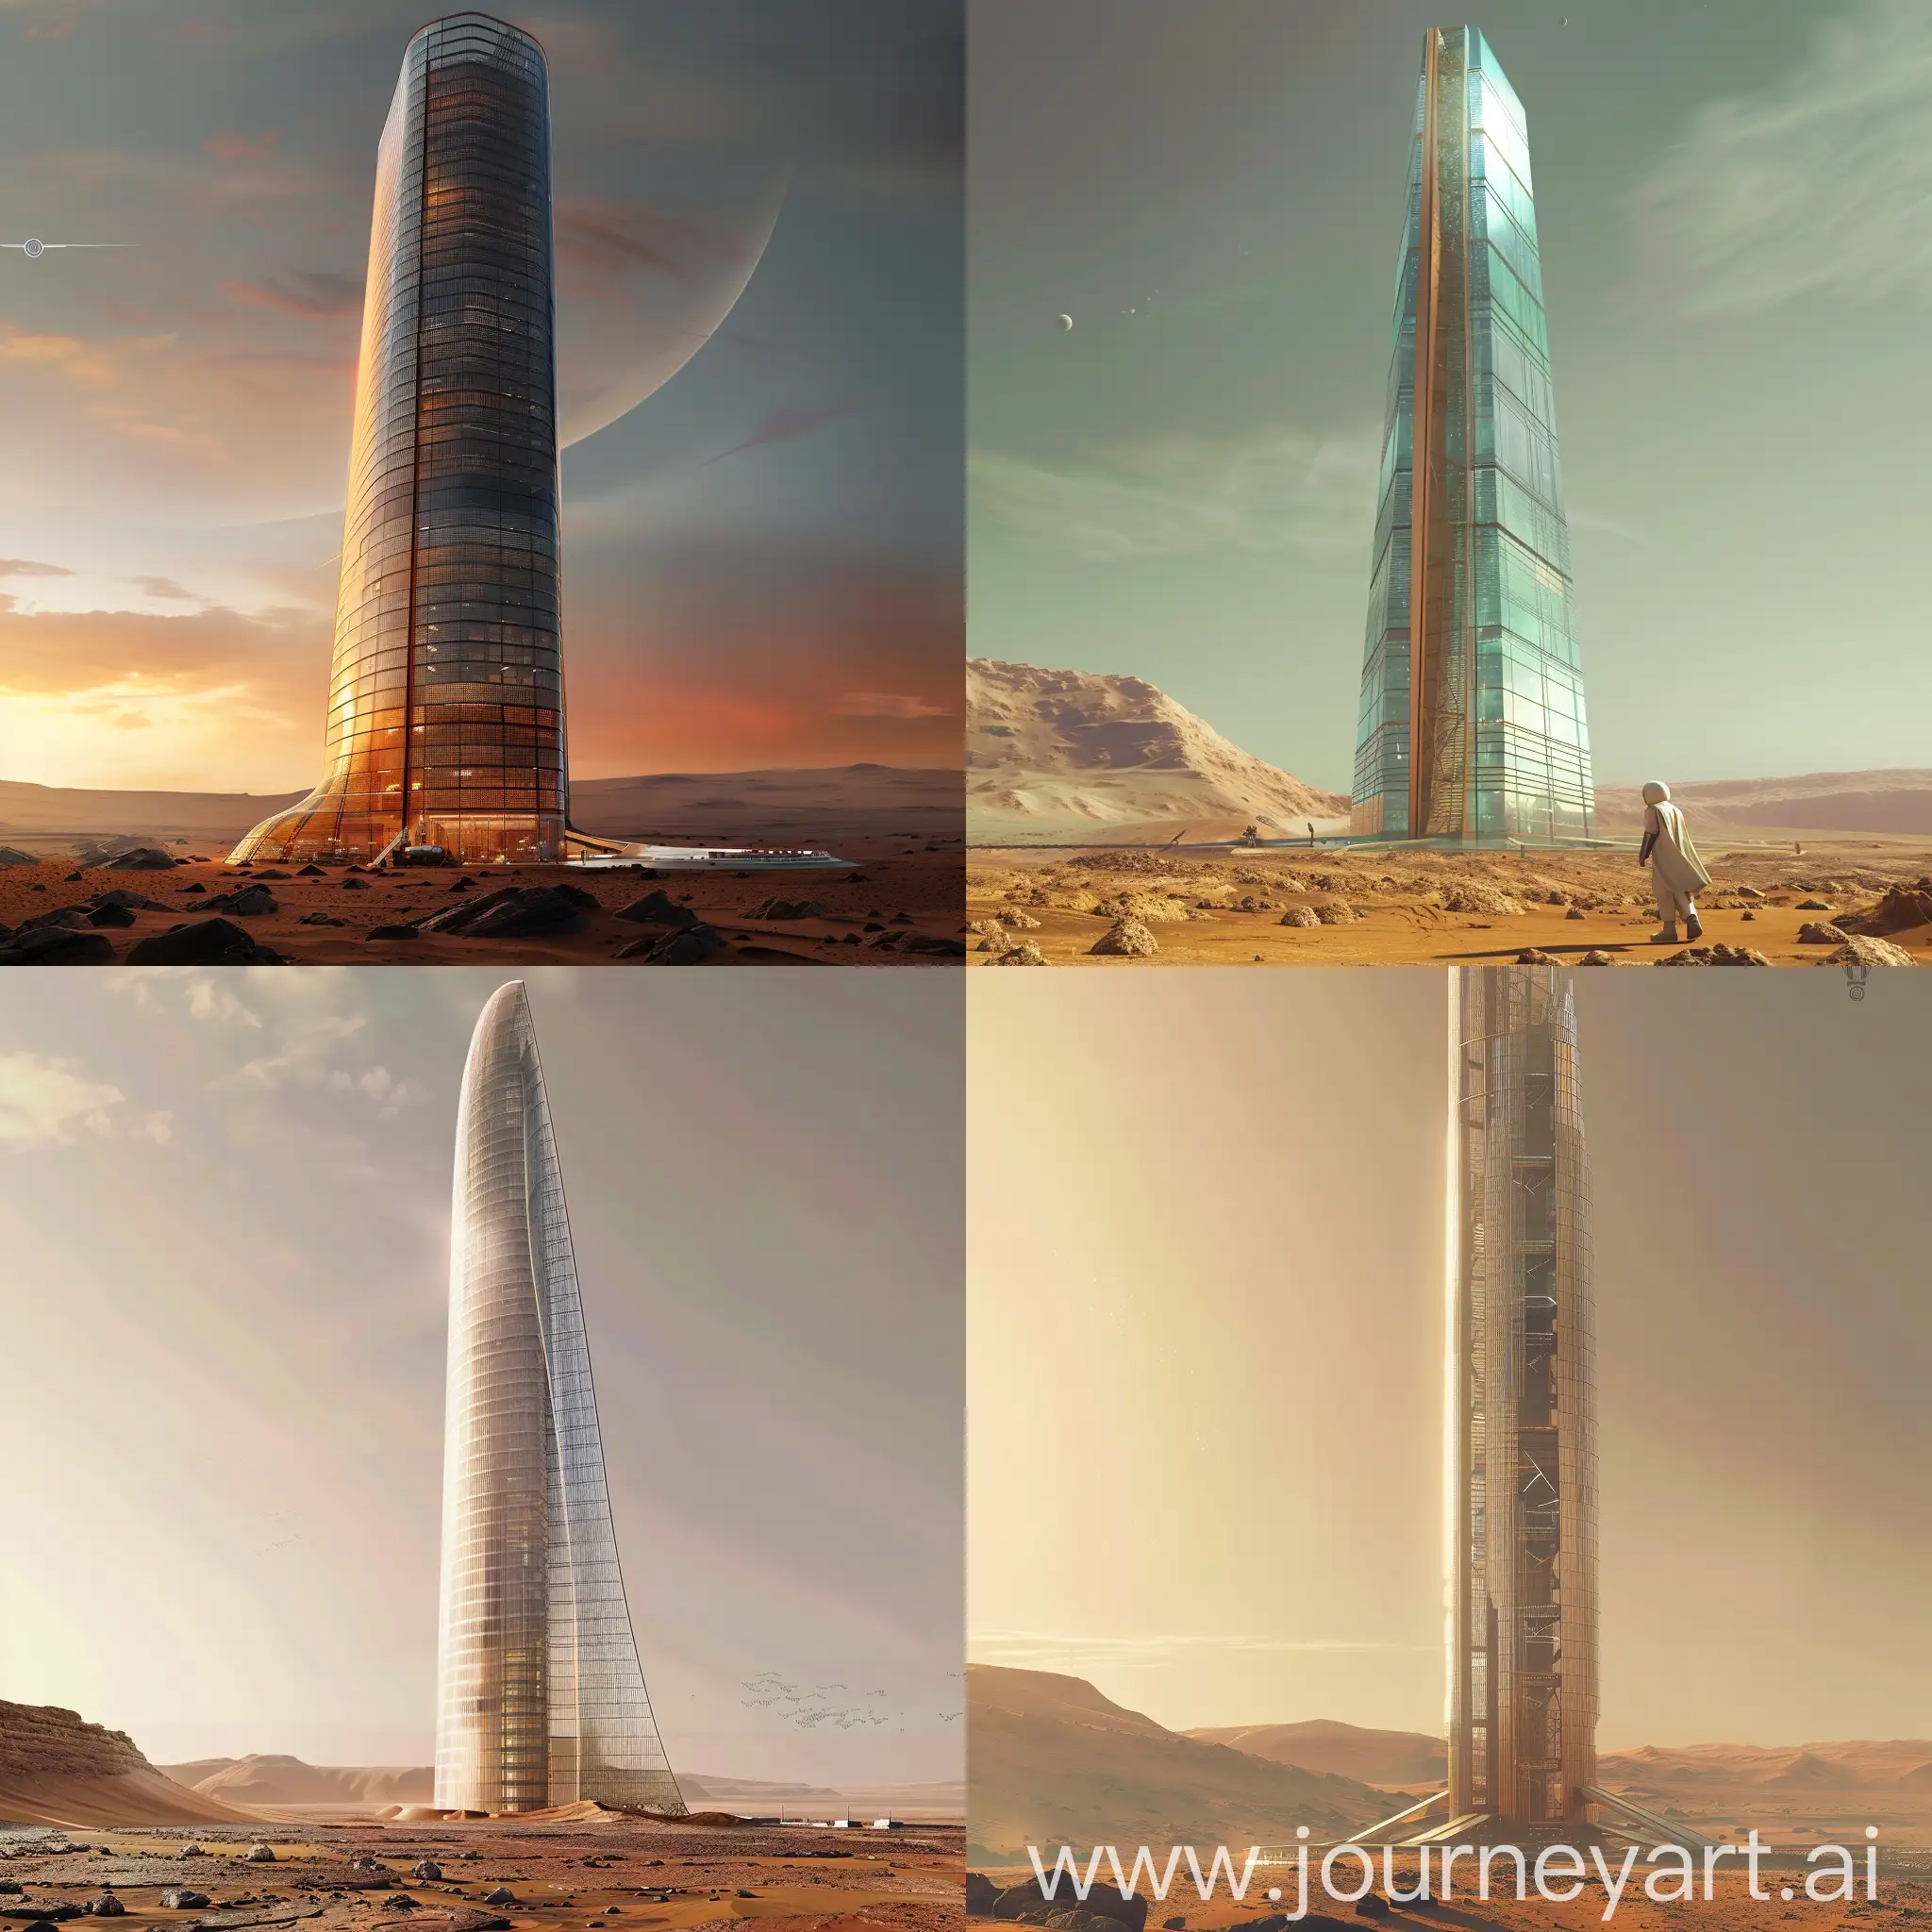 Create a futuristic glass skyscraper on Mars.